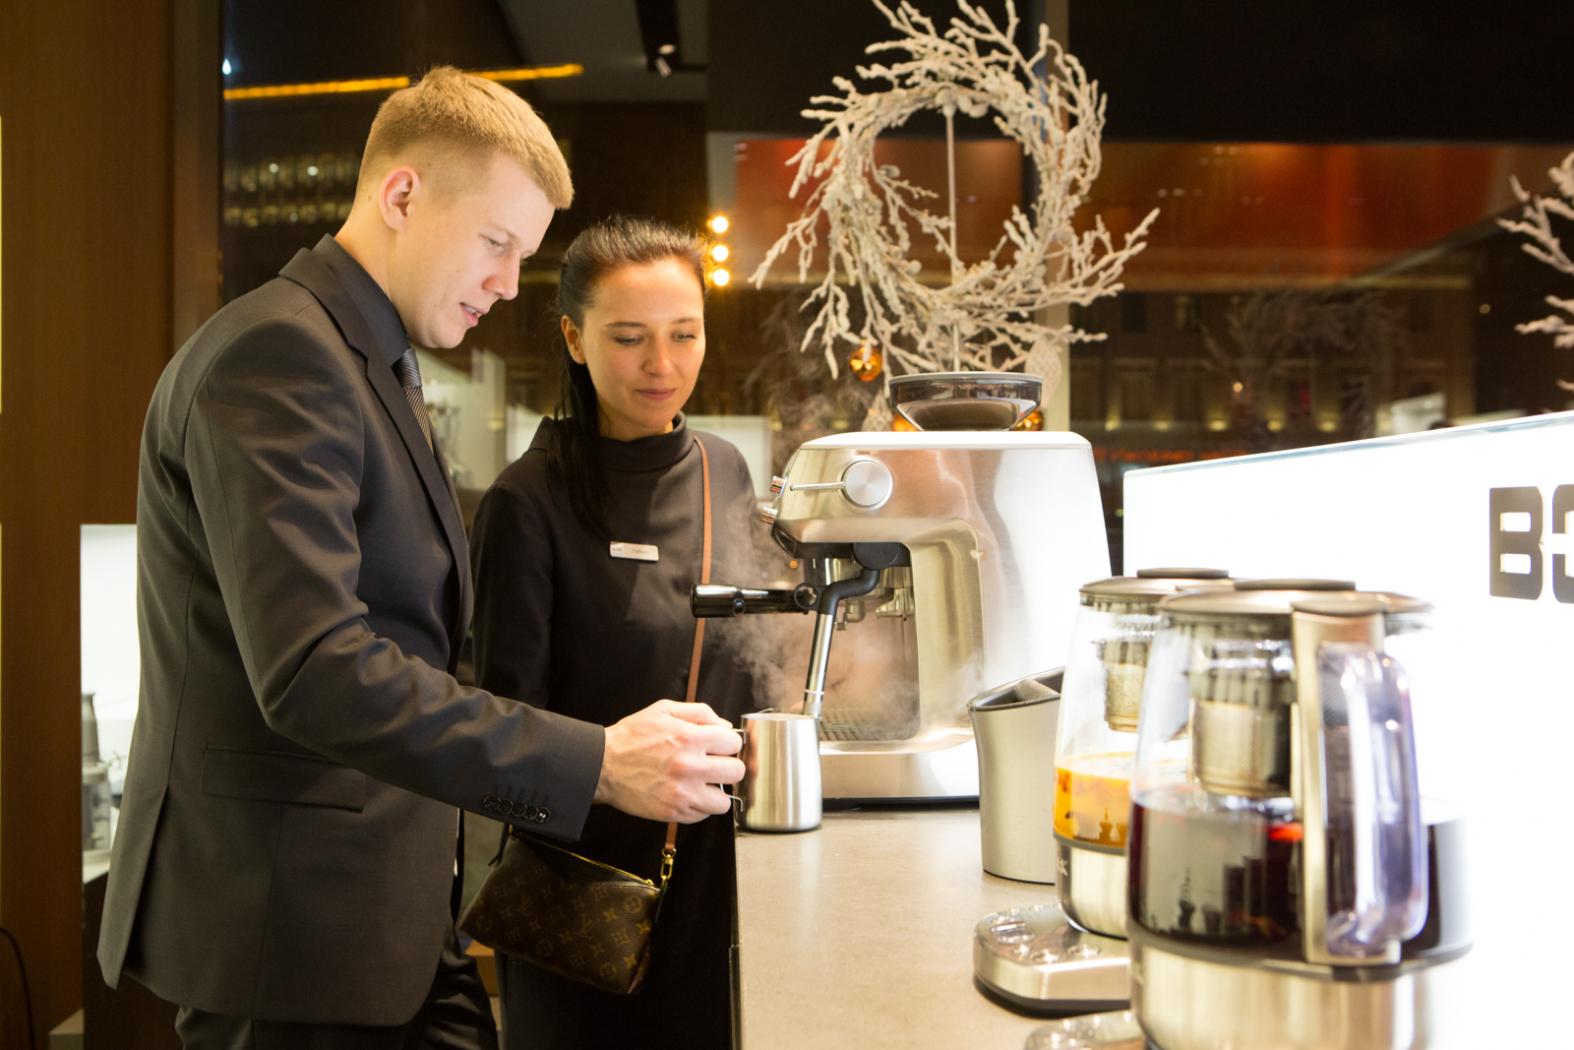 Гости бутика могут выпить чашку кофе или попробовать чай из умного чайника BORK, который умеет правильно заваривать любые сорта.